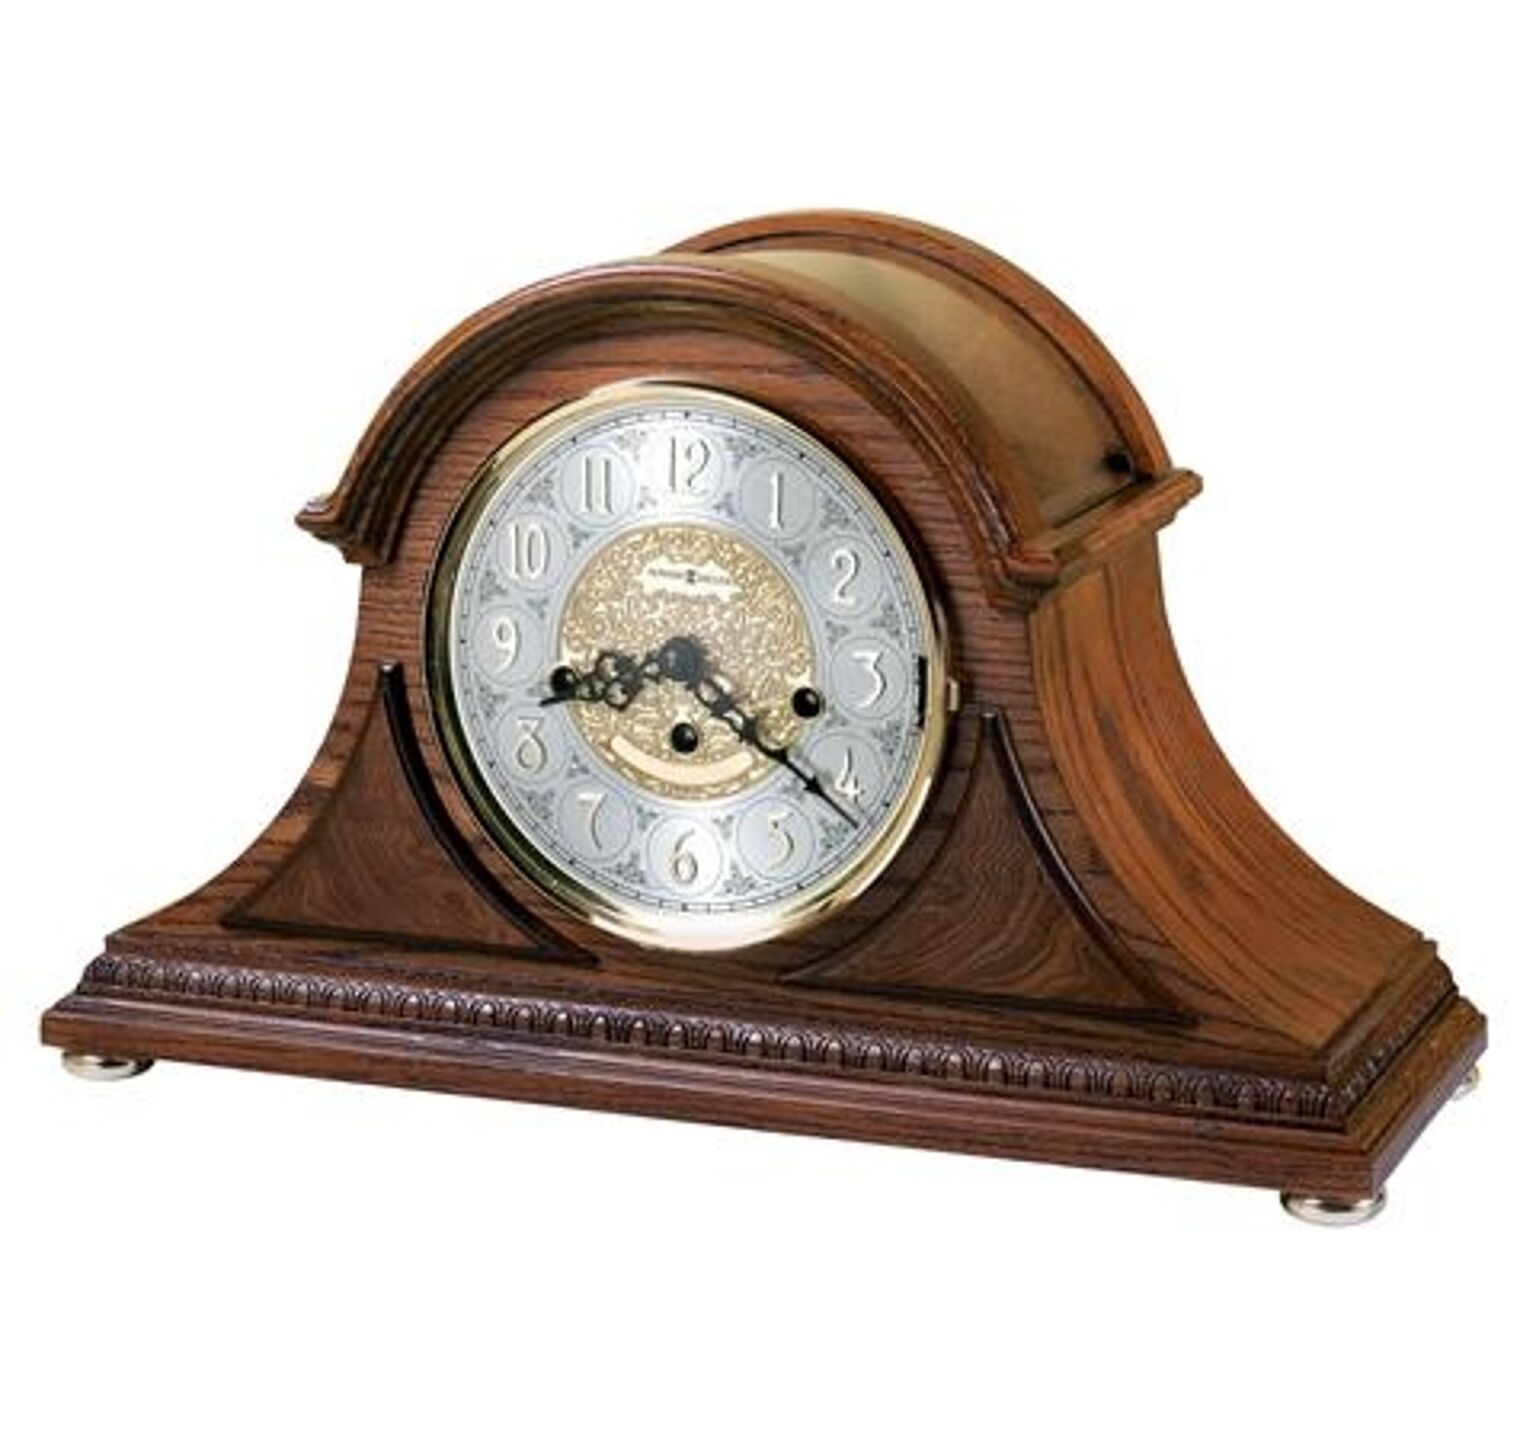 【正規輸入品】 アメリカ ハワードミラー 630-202 HOWARD MILLER BARRETT II 機械式置き時計